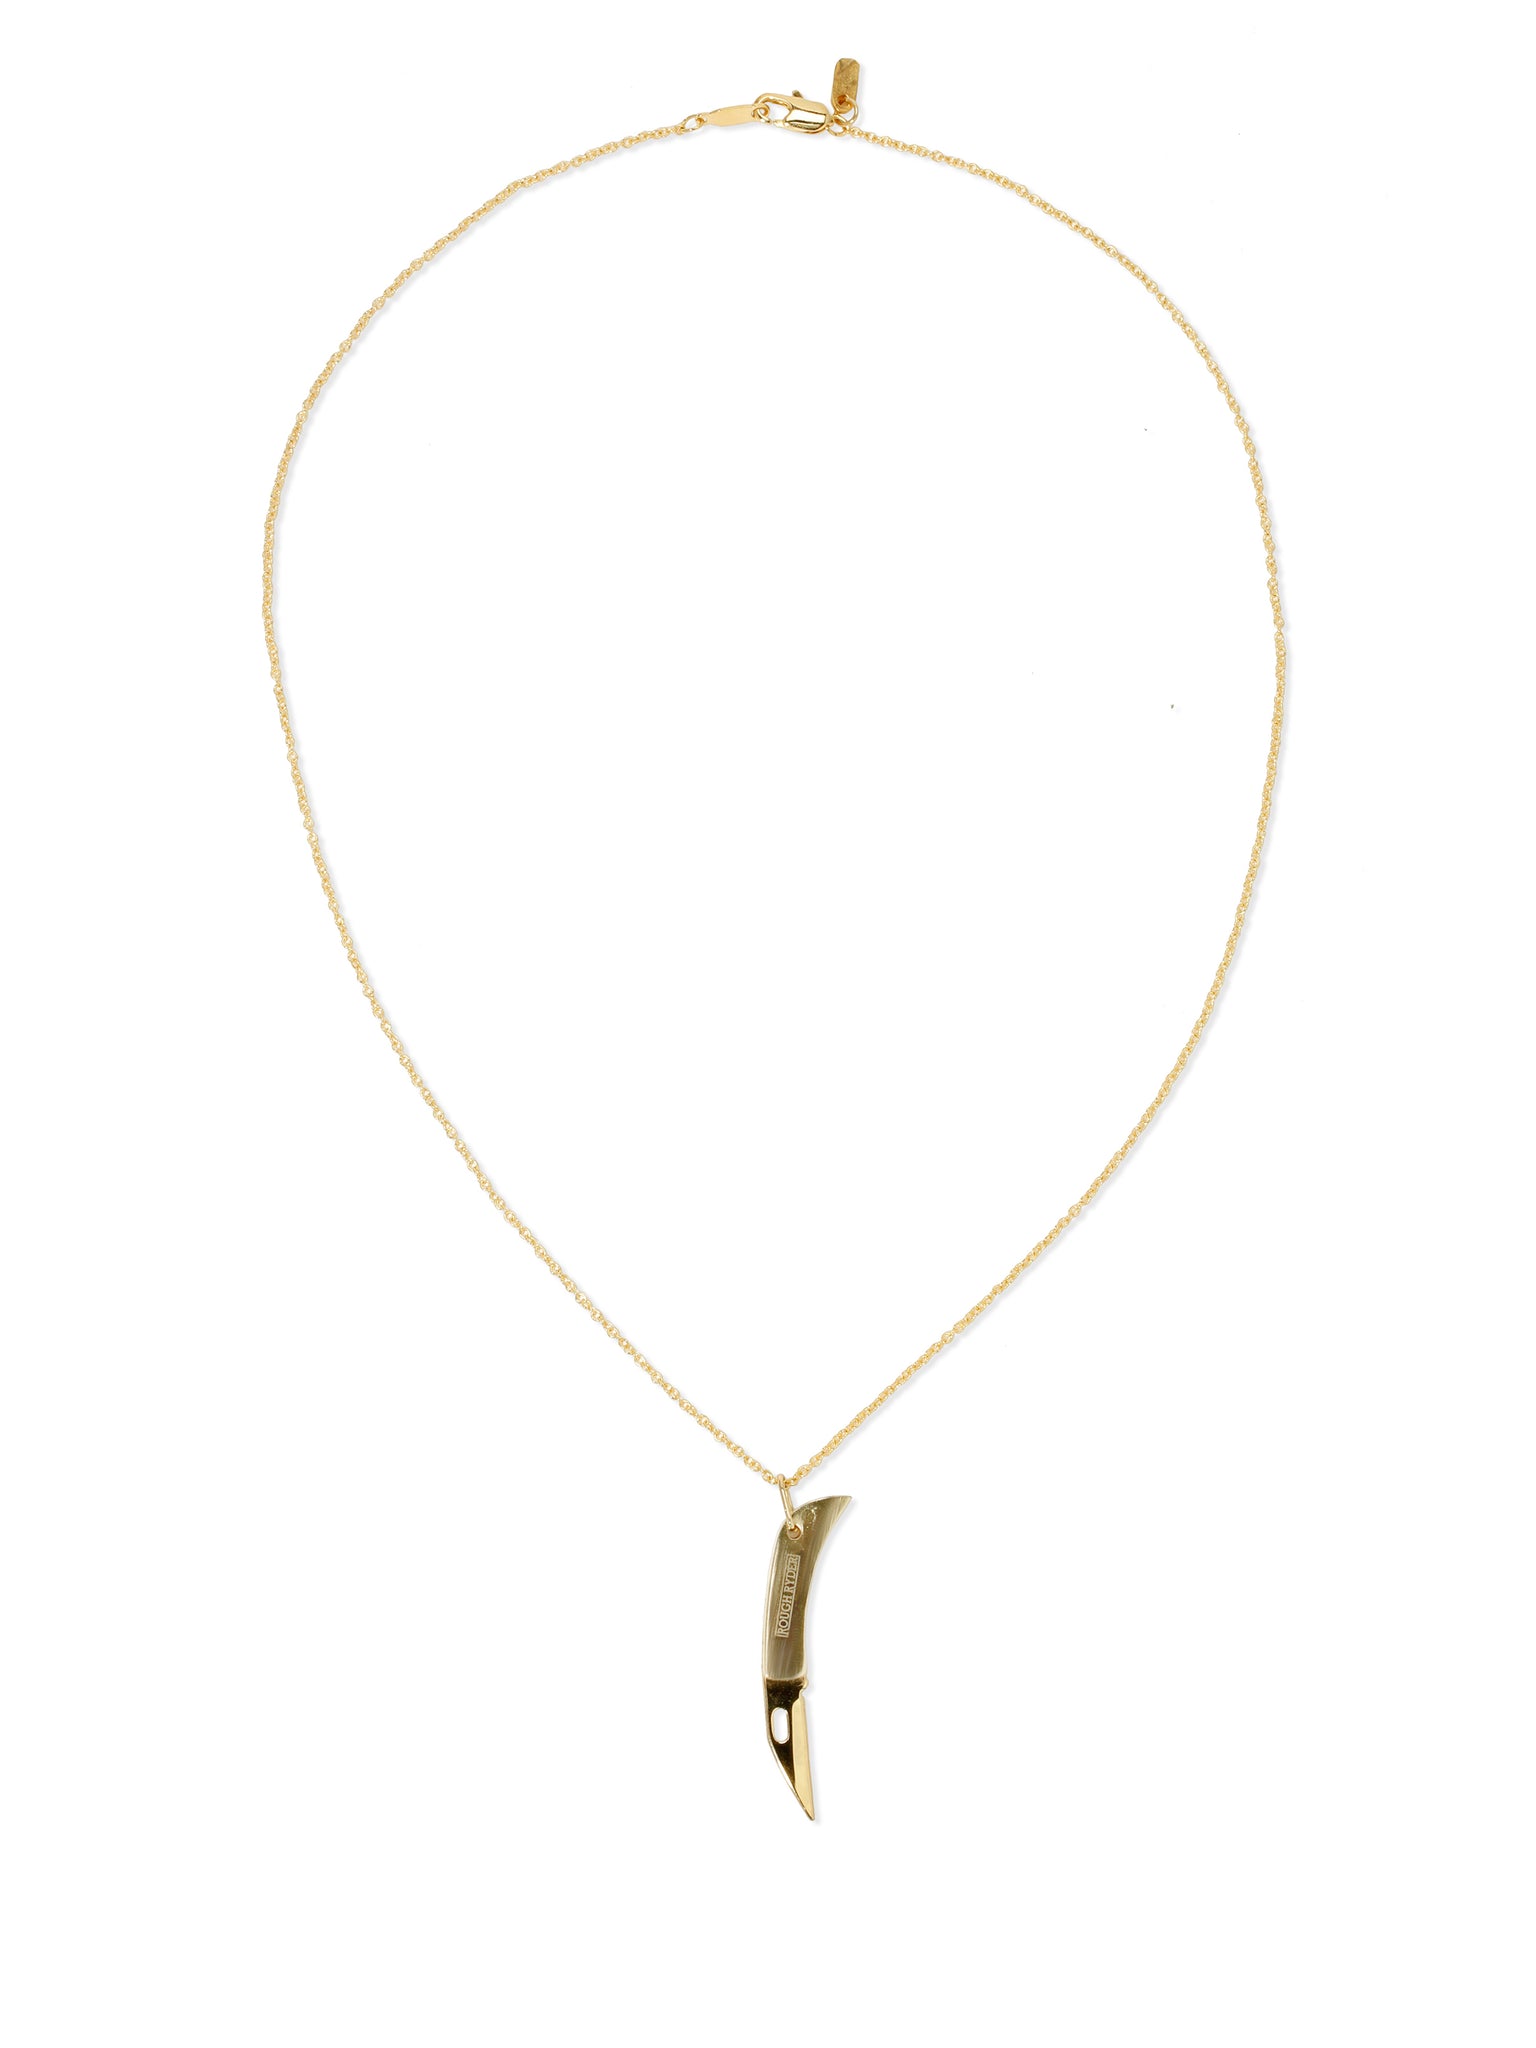 Vanessa Mooney | Women's Choker Necklaces, Gold, Adjustable